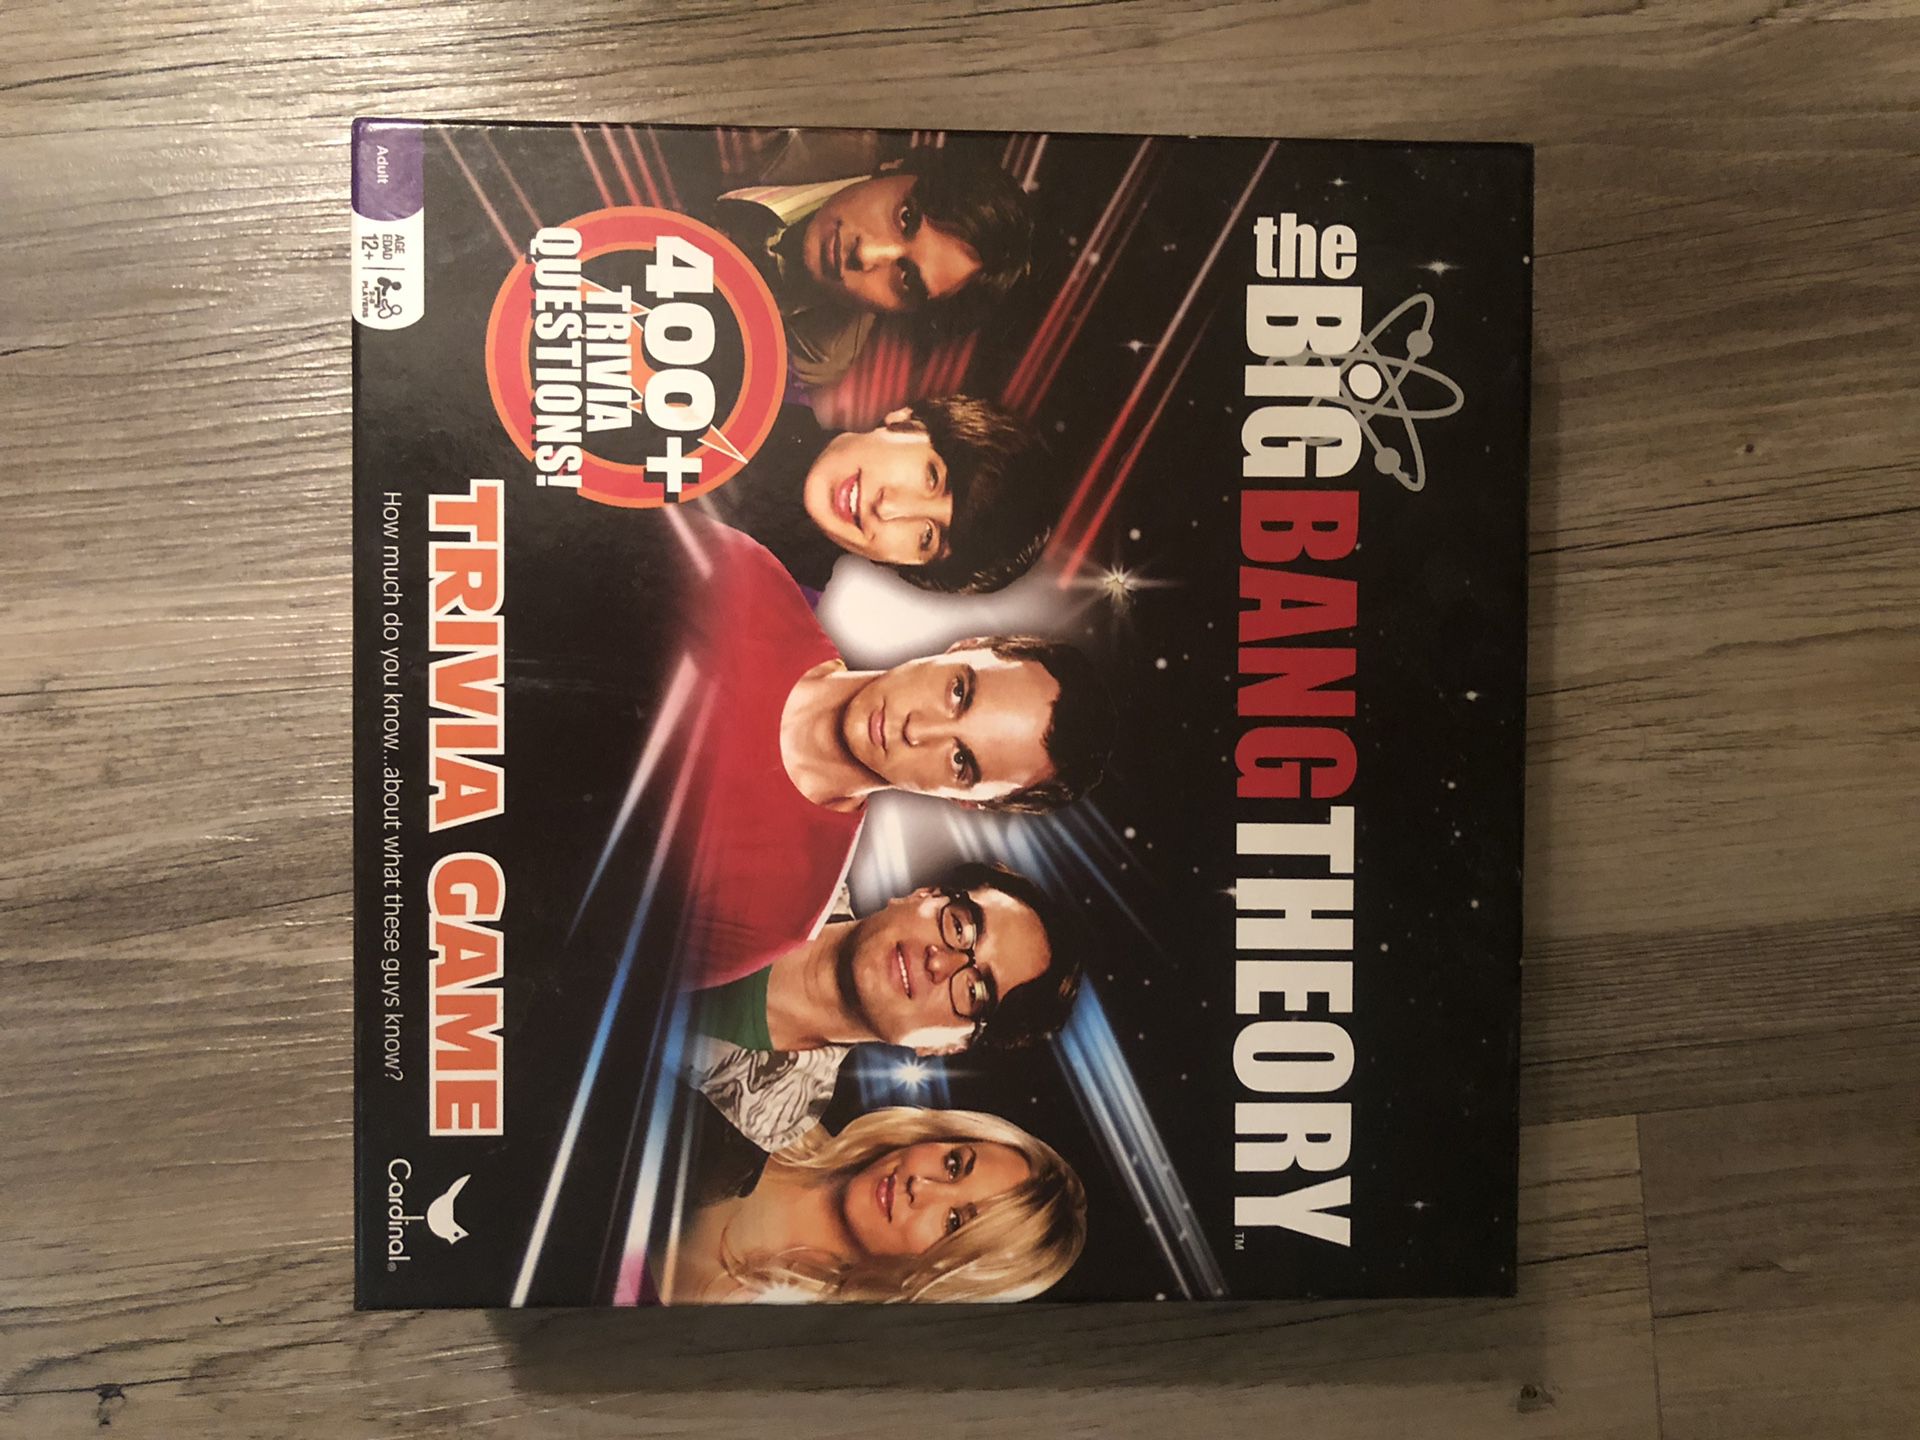 Big Bang Theory Board Game